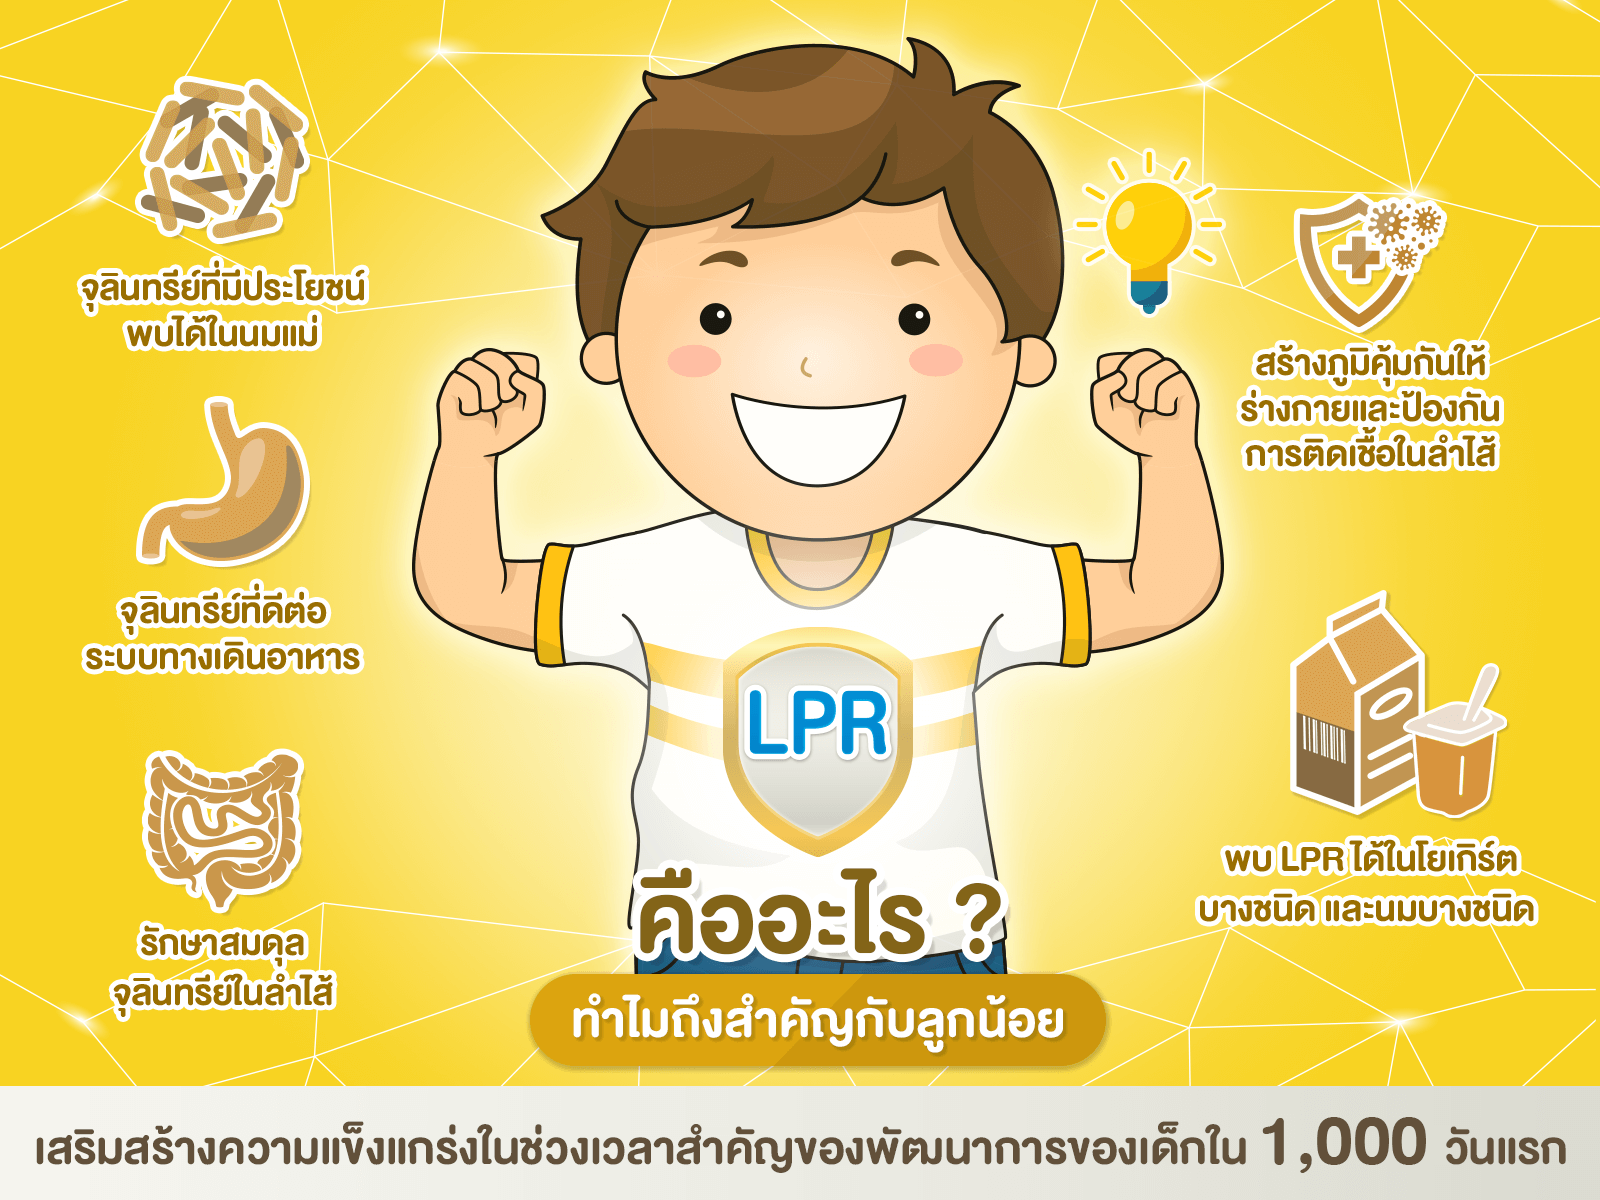 LPR เคล็ดลับเสริมความแกร่ง สู่ความเก่งของเด็กยุคใหม่-เลี้ยงลูกให้เก่งและแกร่ง-พัฒนาการทางสมอง-อาหารสำหรับเด็ก-จุลินทรีย์สุขภาพ-LPR คืออะไร-LPR สารอาหาร